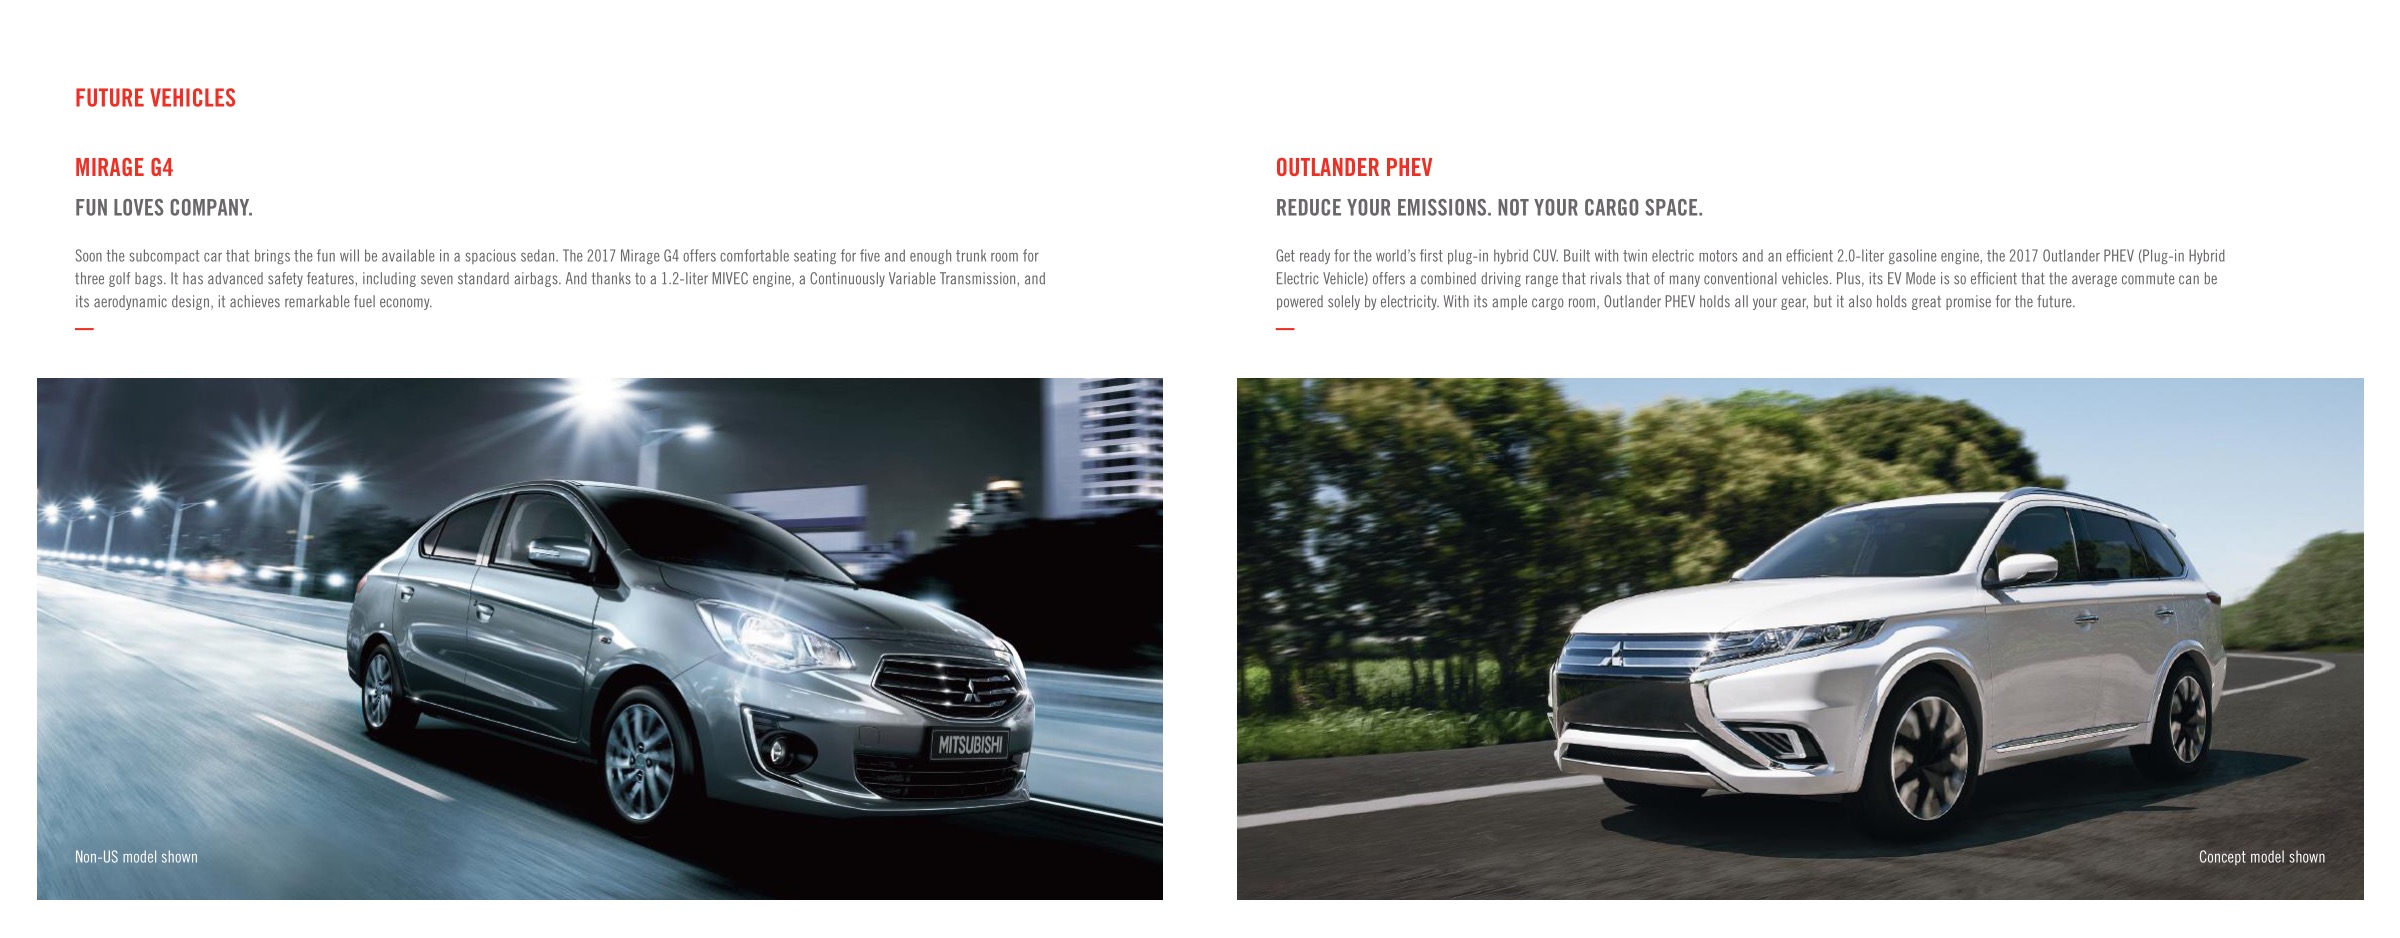 2016 Mitsubishi Full Line Brochure Page 7